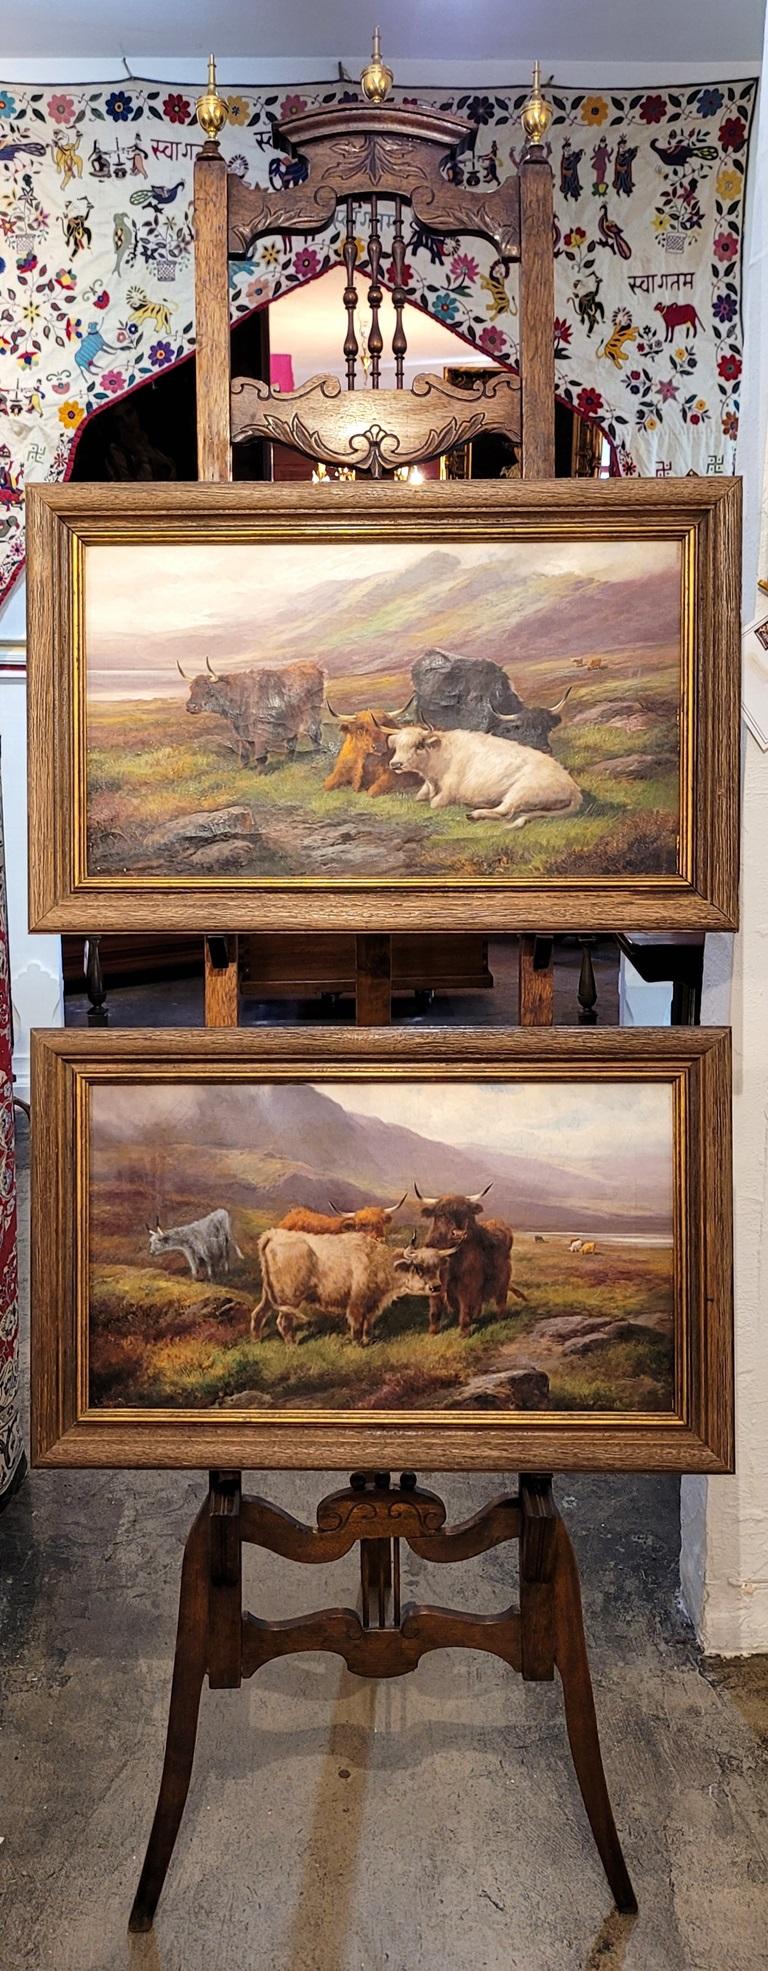 PRÉSENTE une paire d'huiles sur toile du 19e siècle représentant des bovins des Highlands par John W. Morris.

Circa 1890-1900 et peinte par John W. Morris, un artiste britannique renommé, connu pour ses scènes des Highlands écossais et en